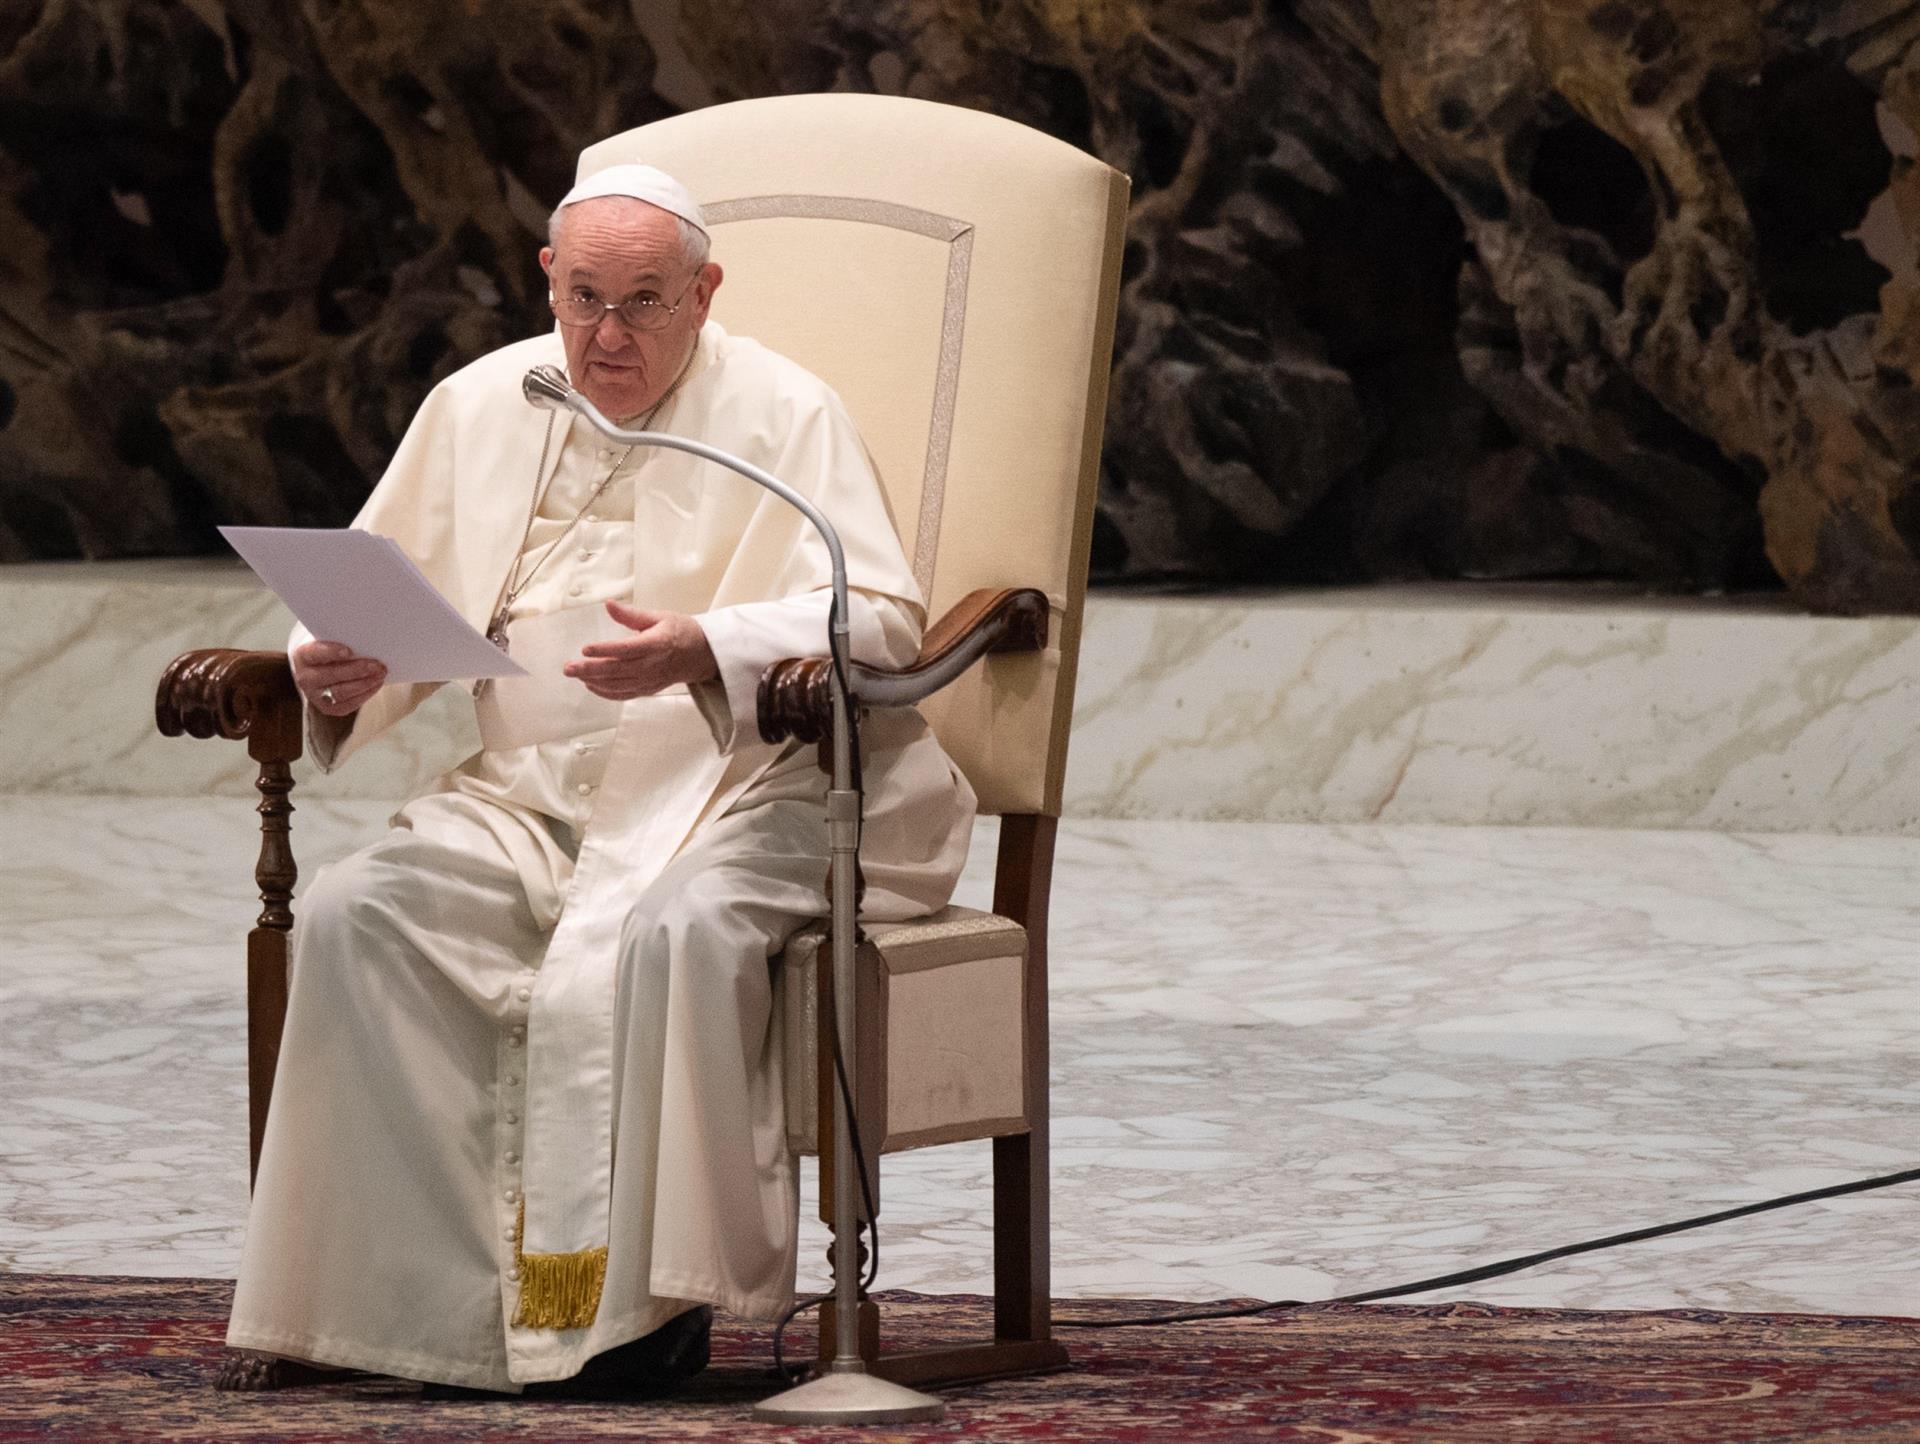 El papa Francisco expresó su “vergüenza” ante escándalo de abusos sexuales contra niños en Francia